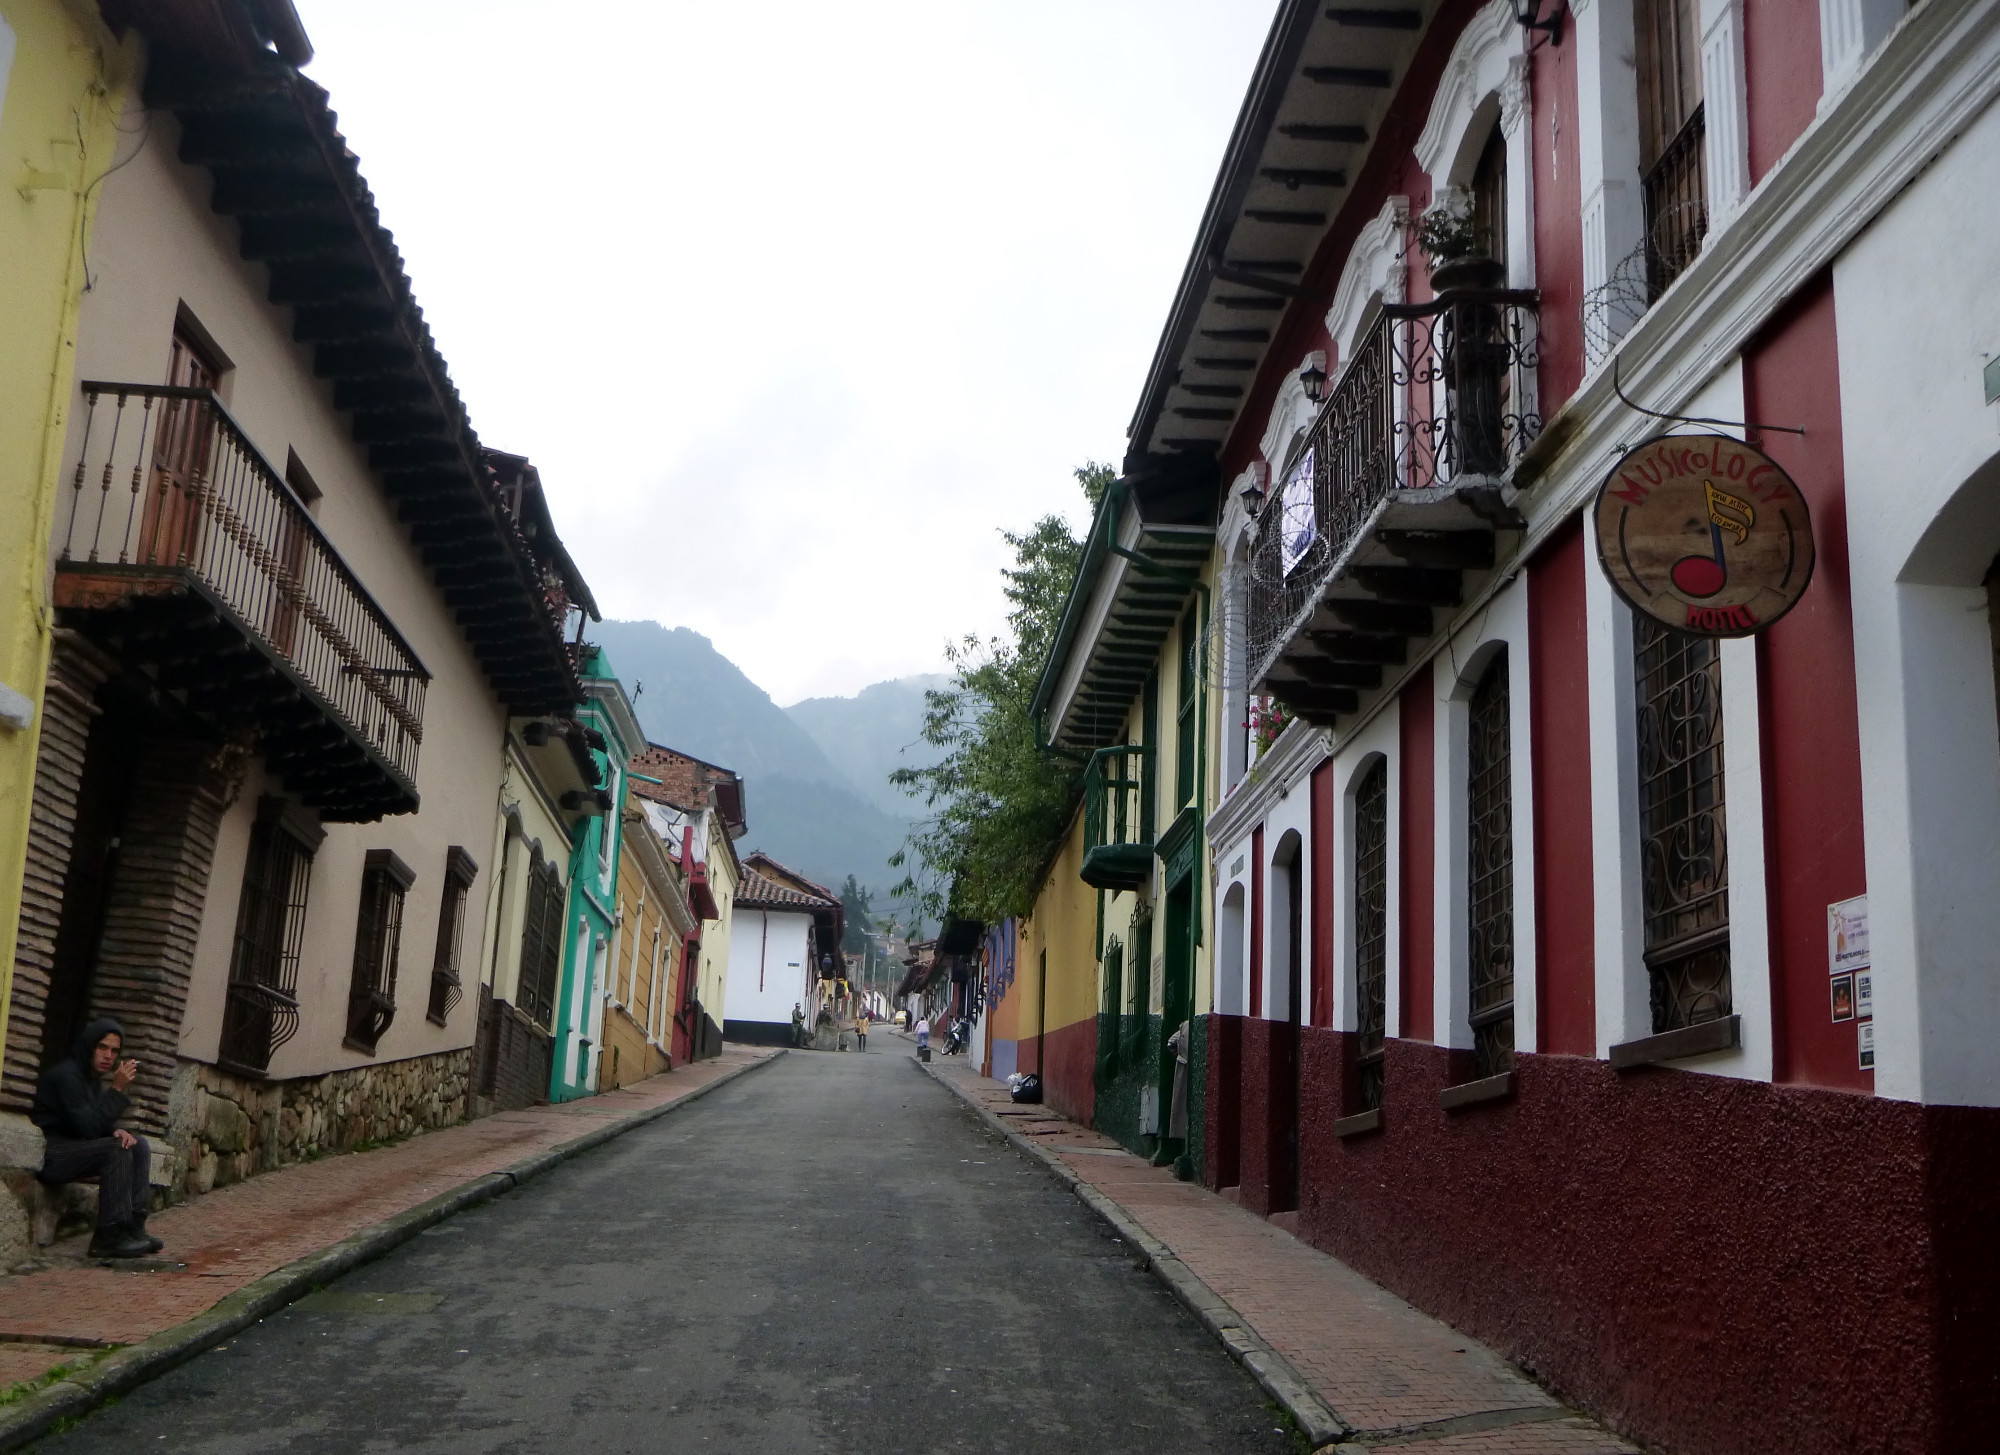 La Candelaria, Colombia